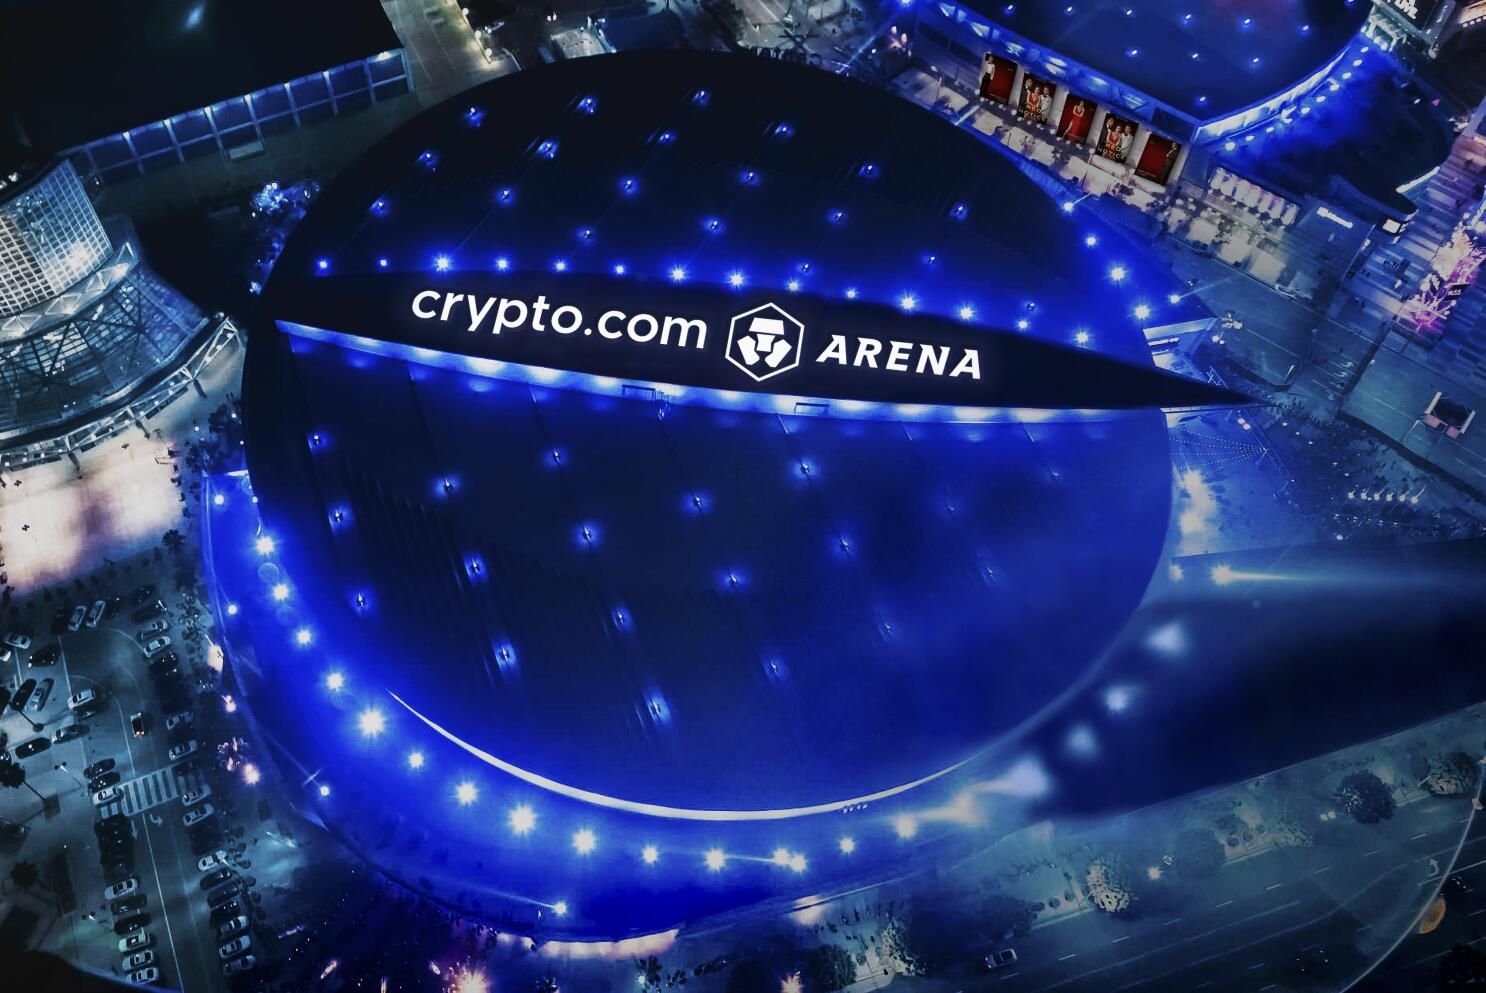 Crypto.com Arena (Previously Staples Center)